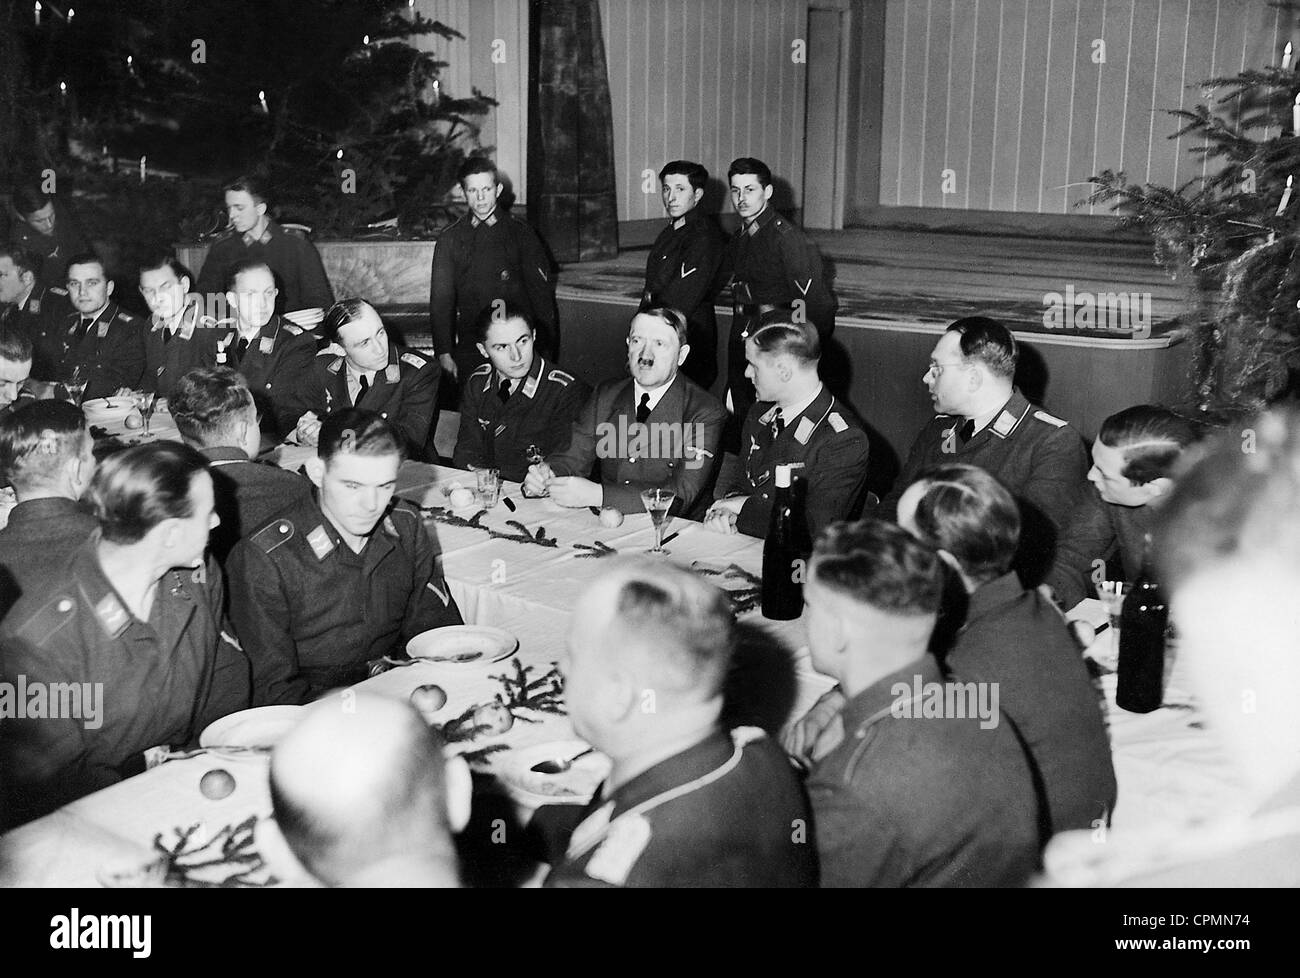 Adolf Hitler bei einem Besuch der Truppe zu Weihnachten, 1940  Stockfotografie - Alamy